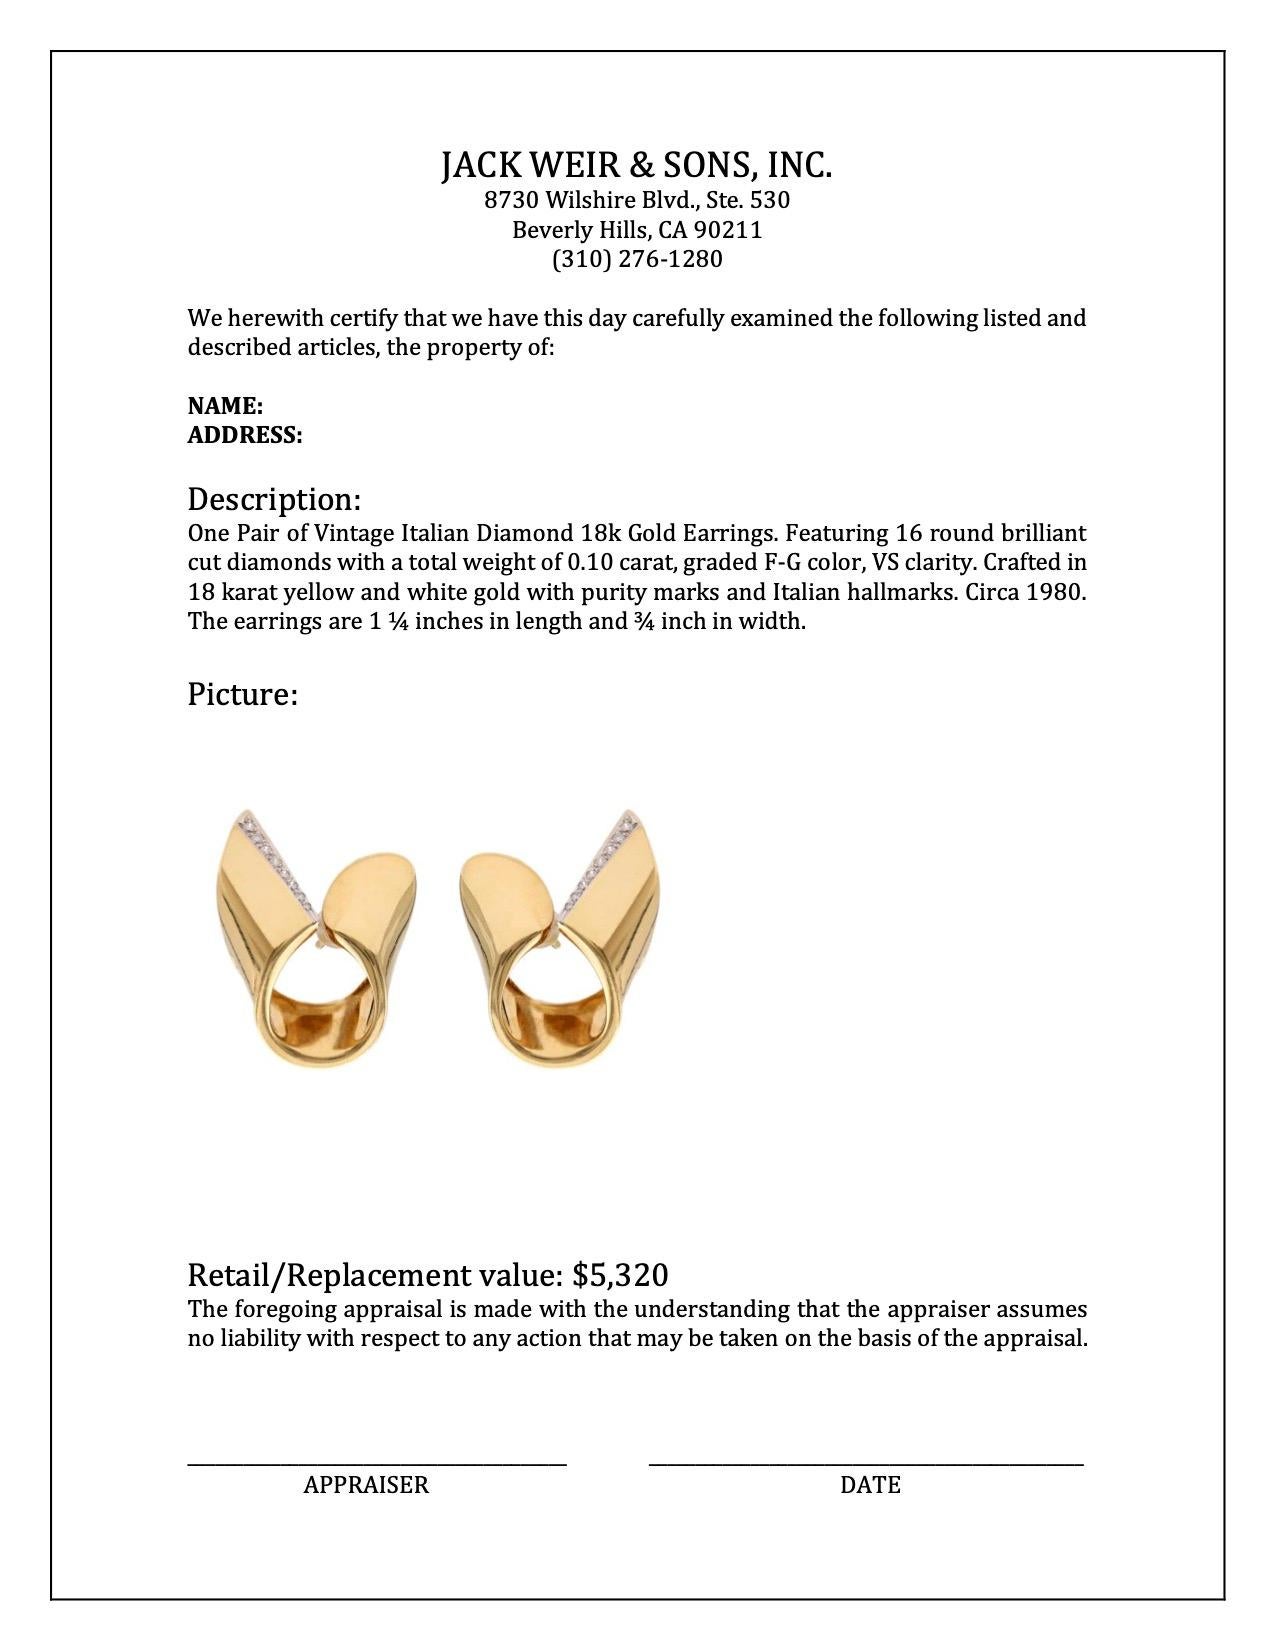 Women's or Men's Pair of Vintage Italian Diamond 18k Gold Earrings For Sale